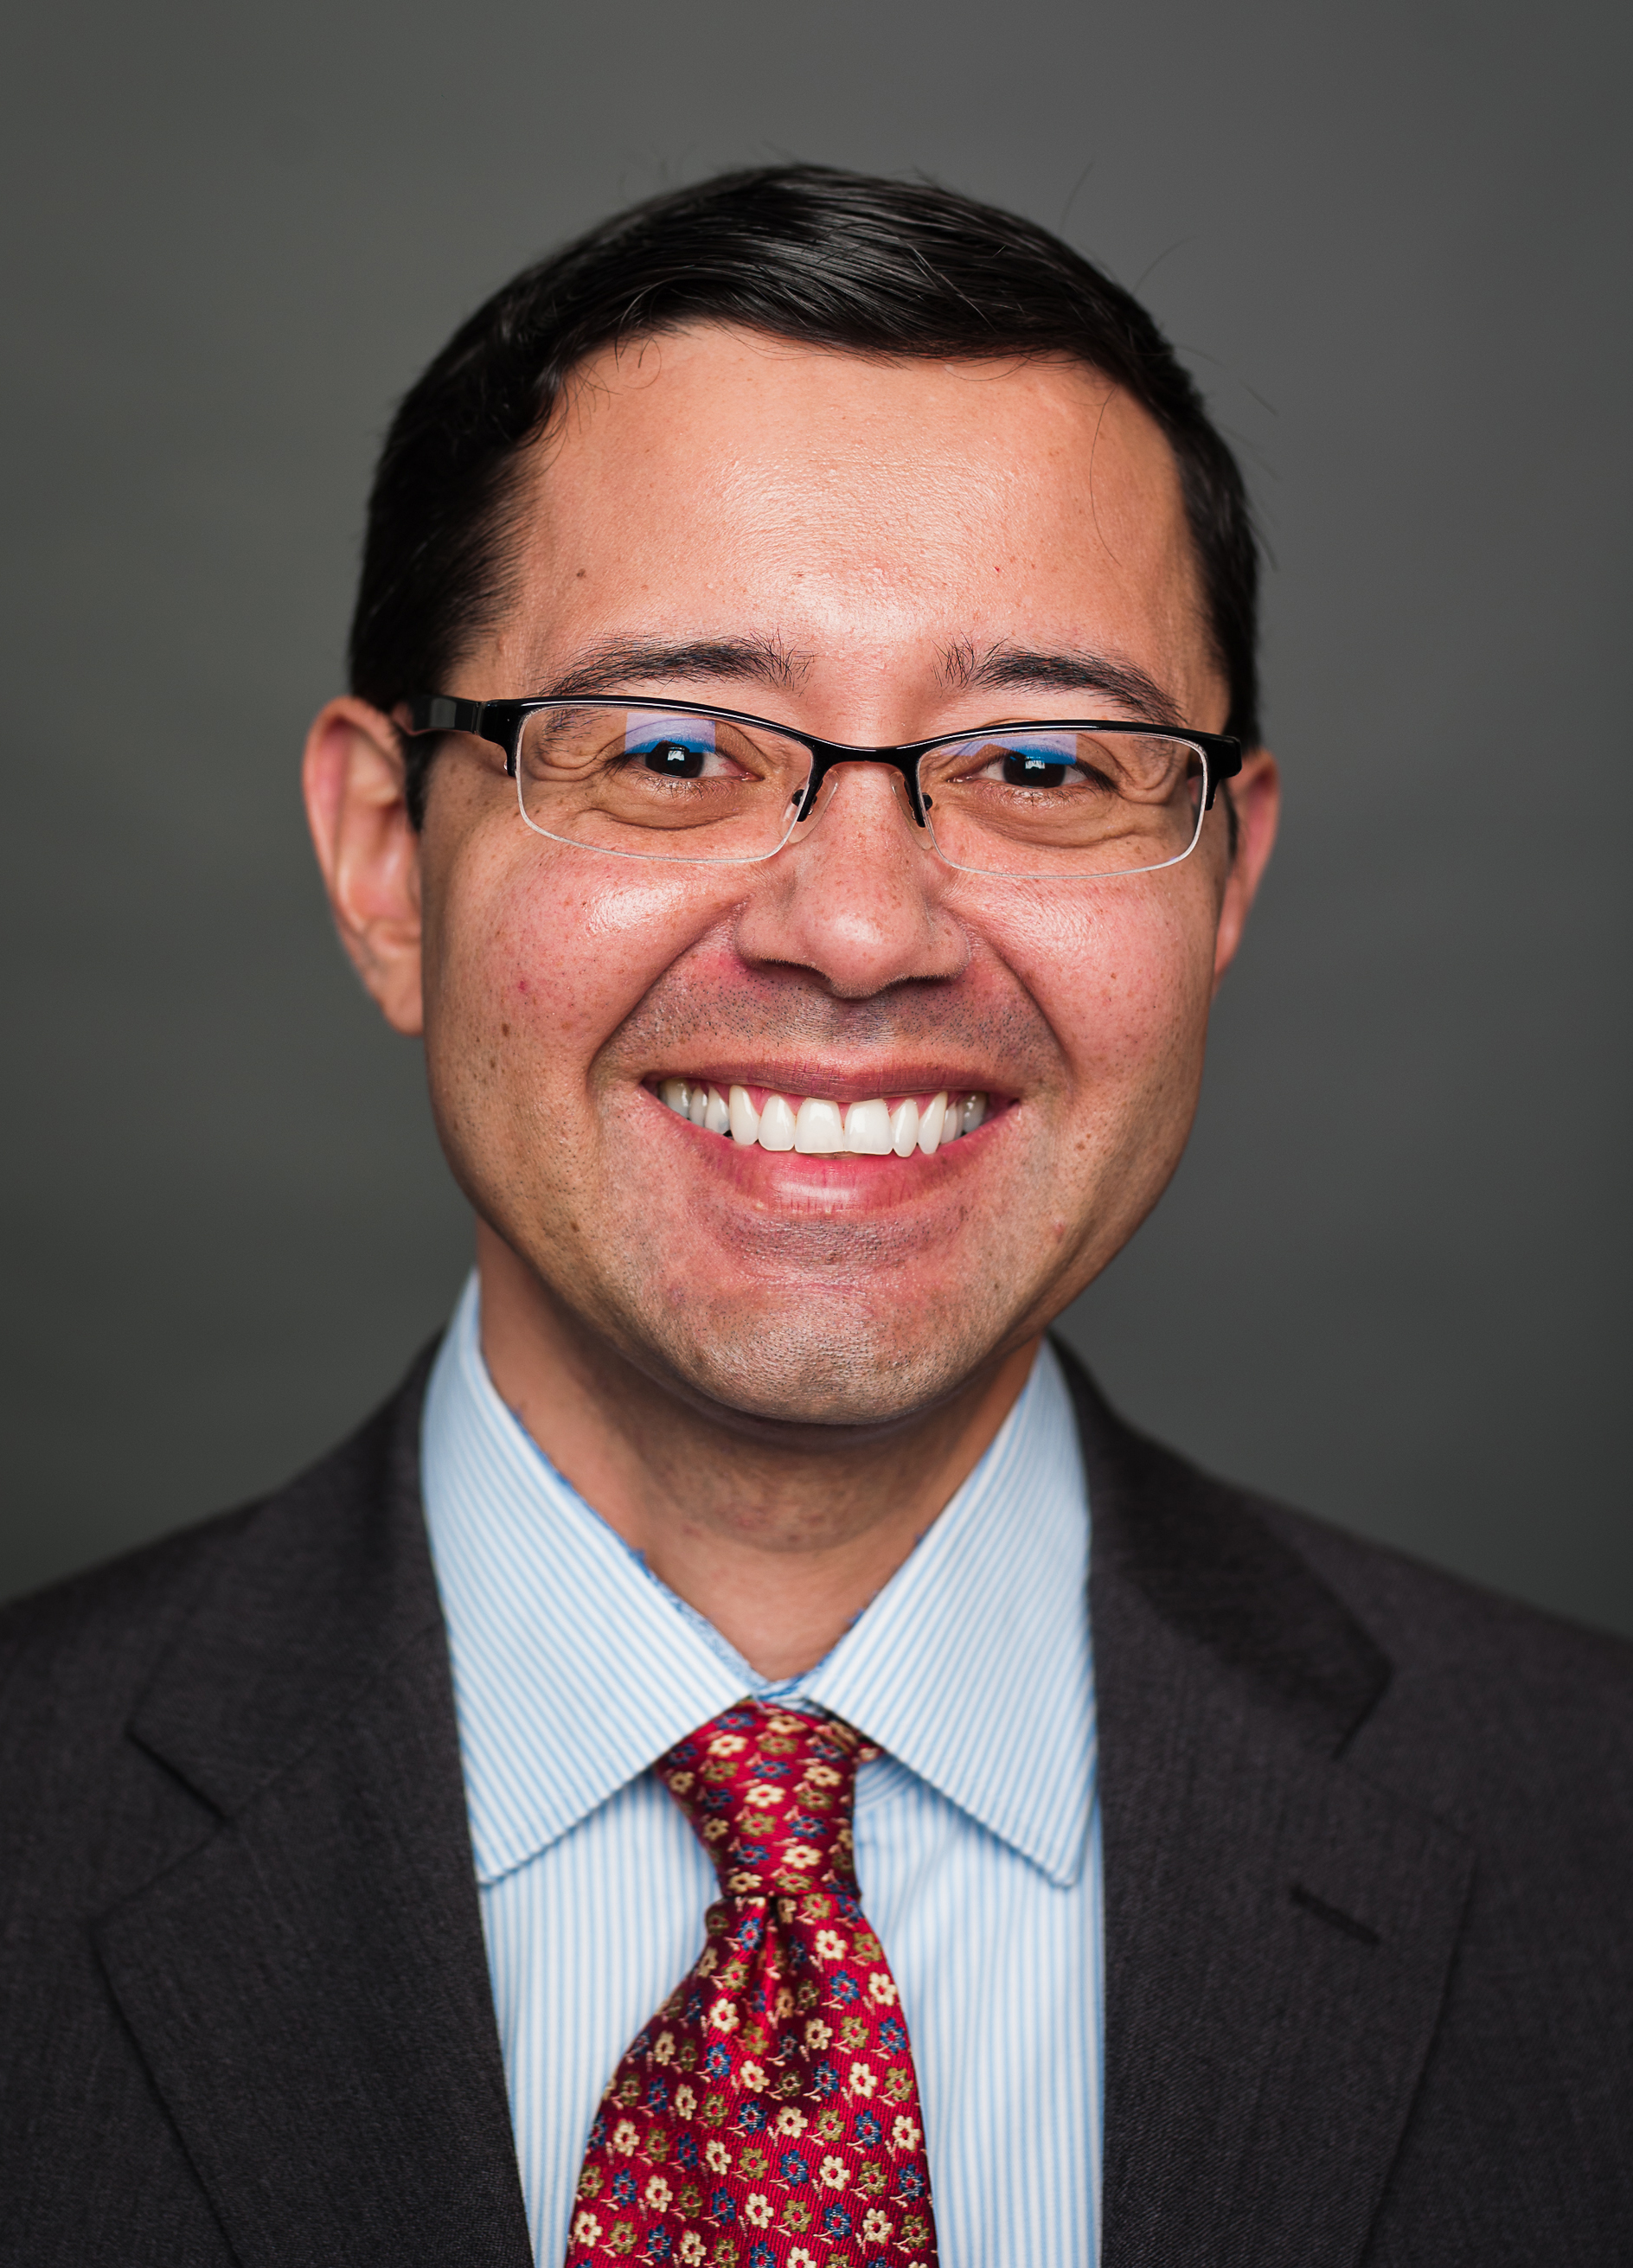 Dr. Oscar Fernandez